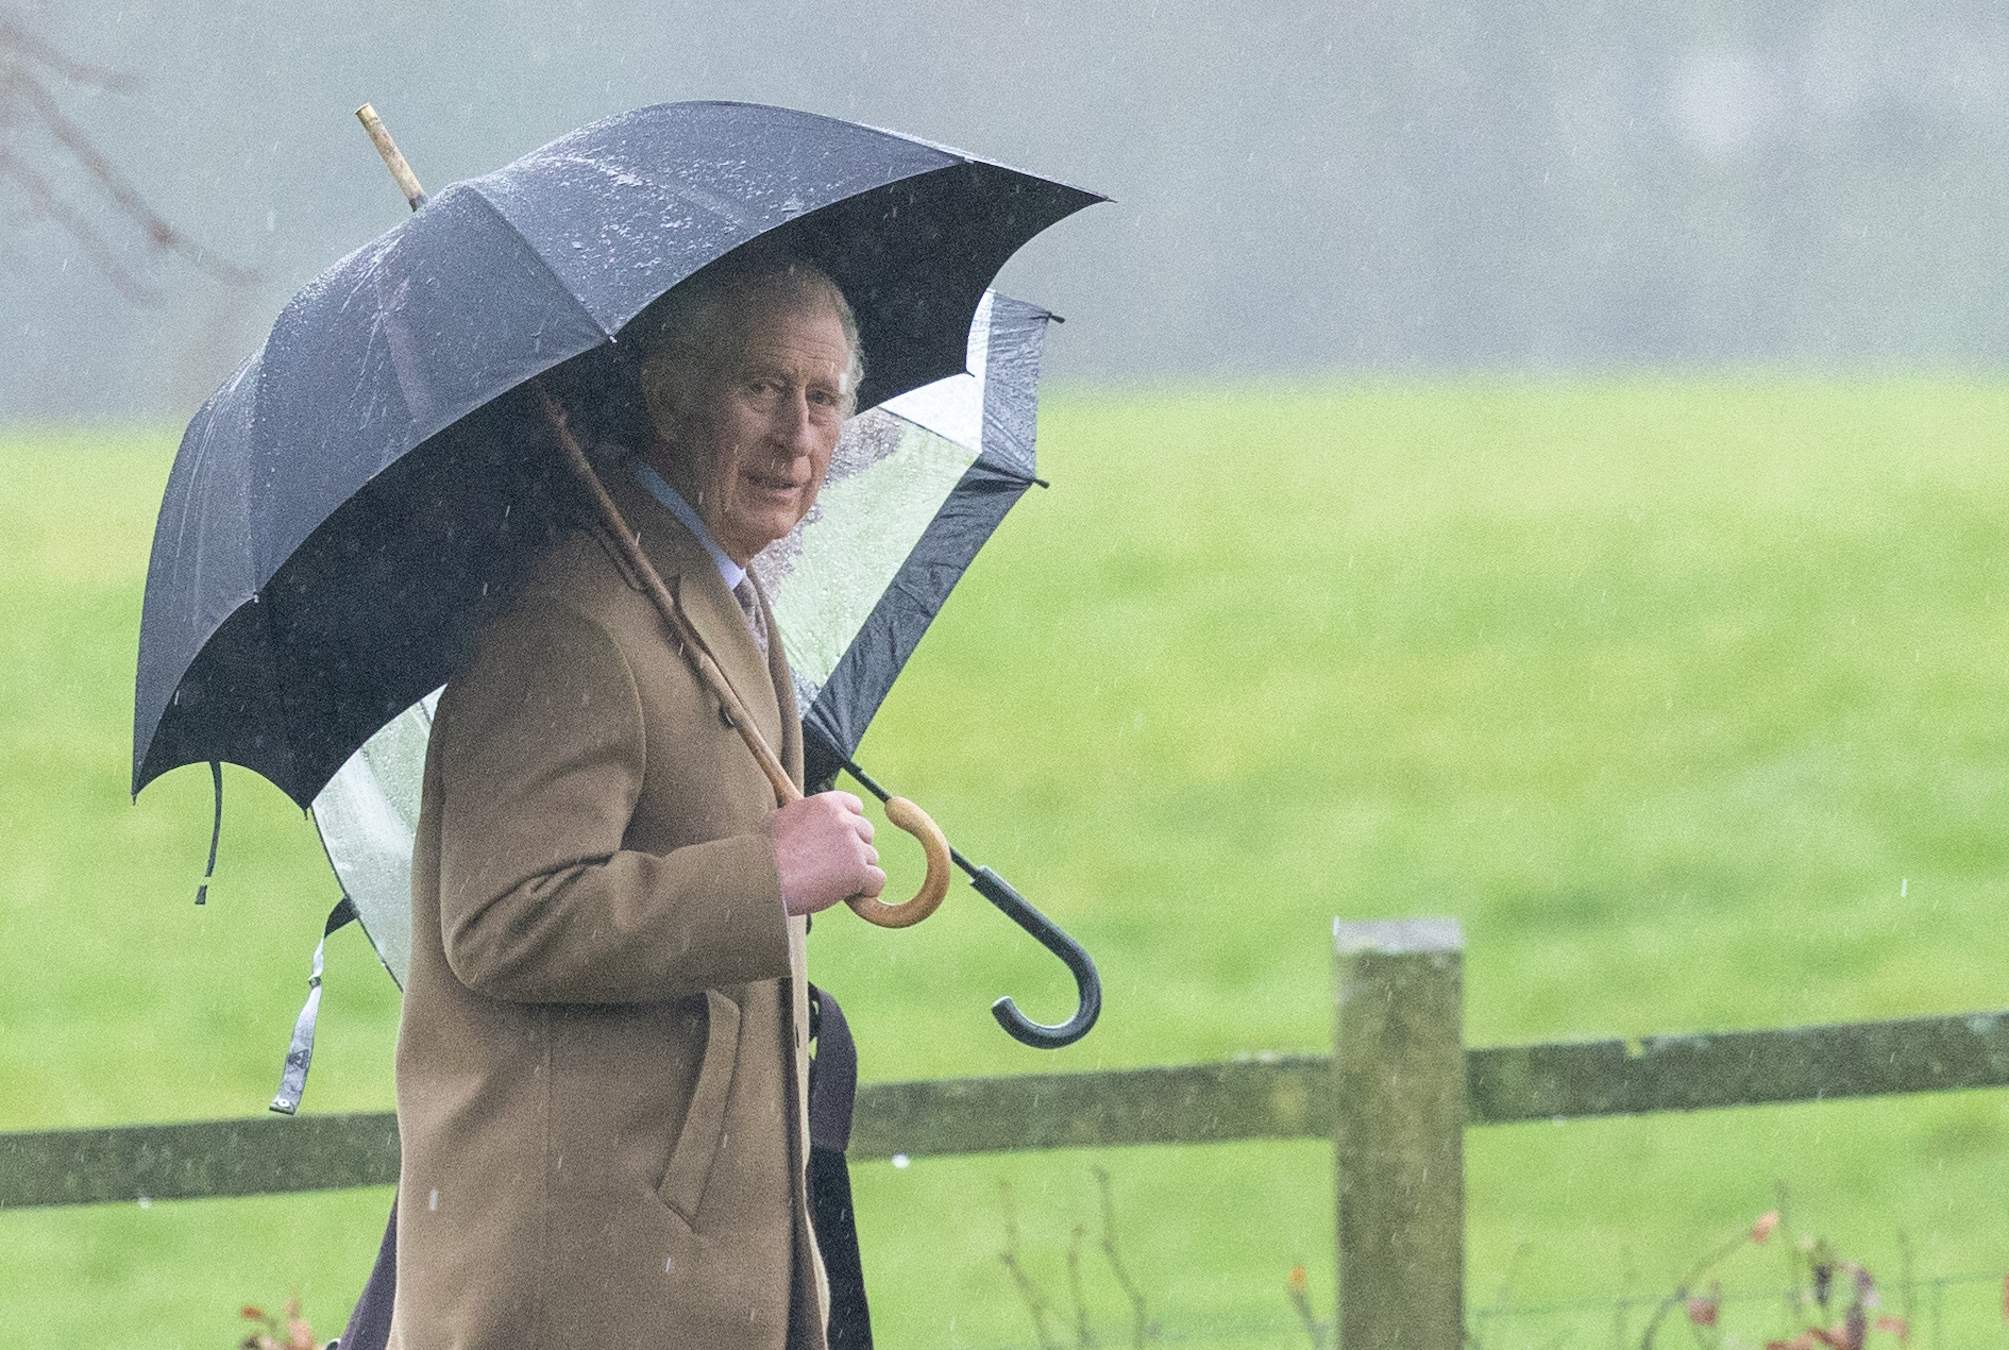 Carles III està molt pitjor del què s'explica, està molt malalt, la seva esperança de vida és mínima